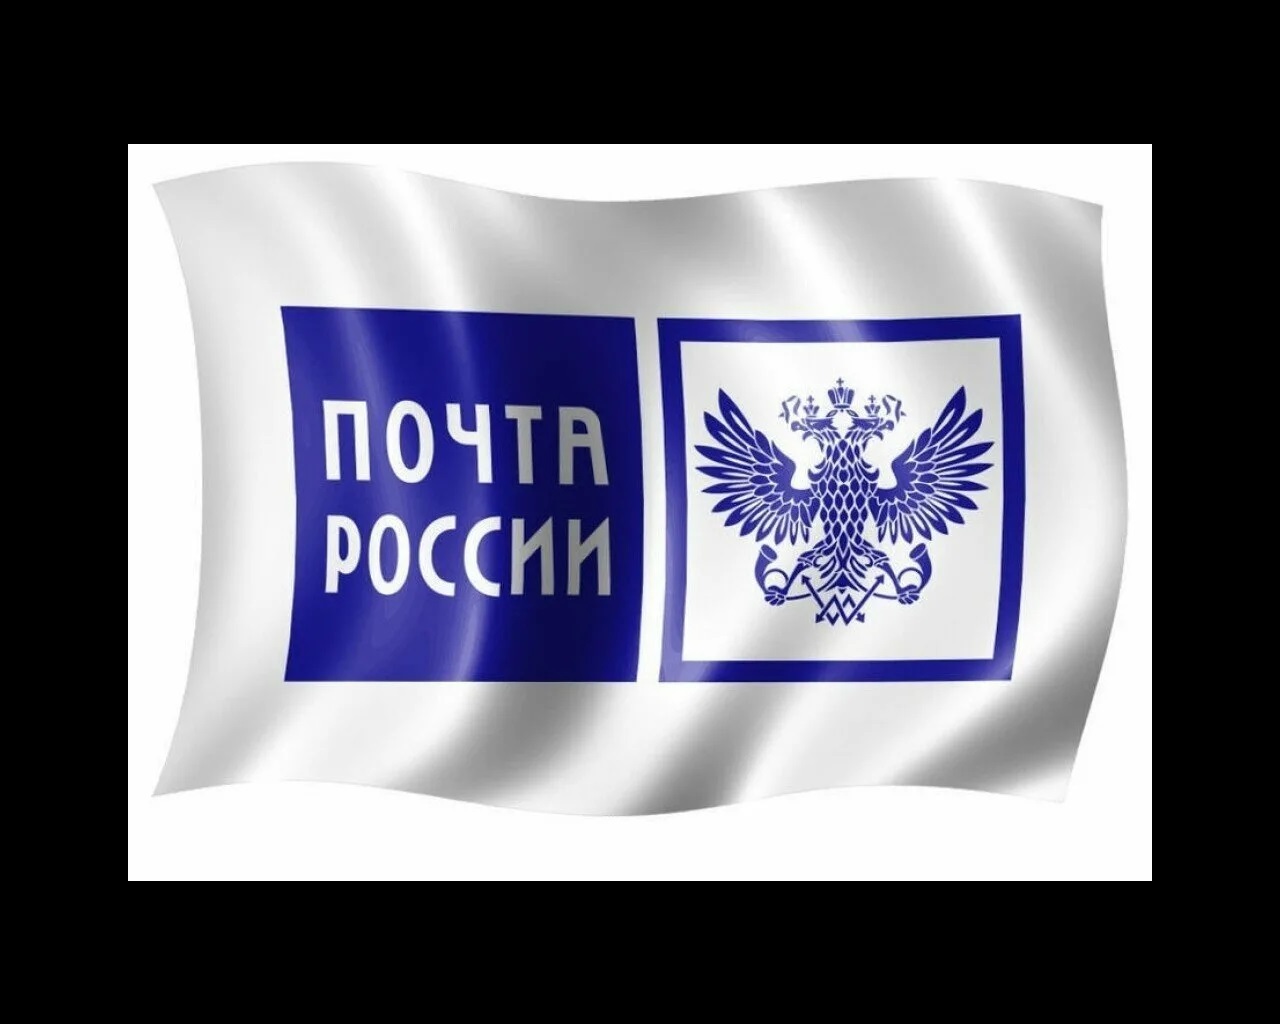 Почта России логотип